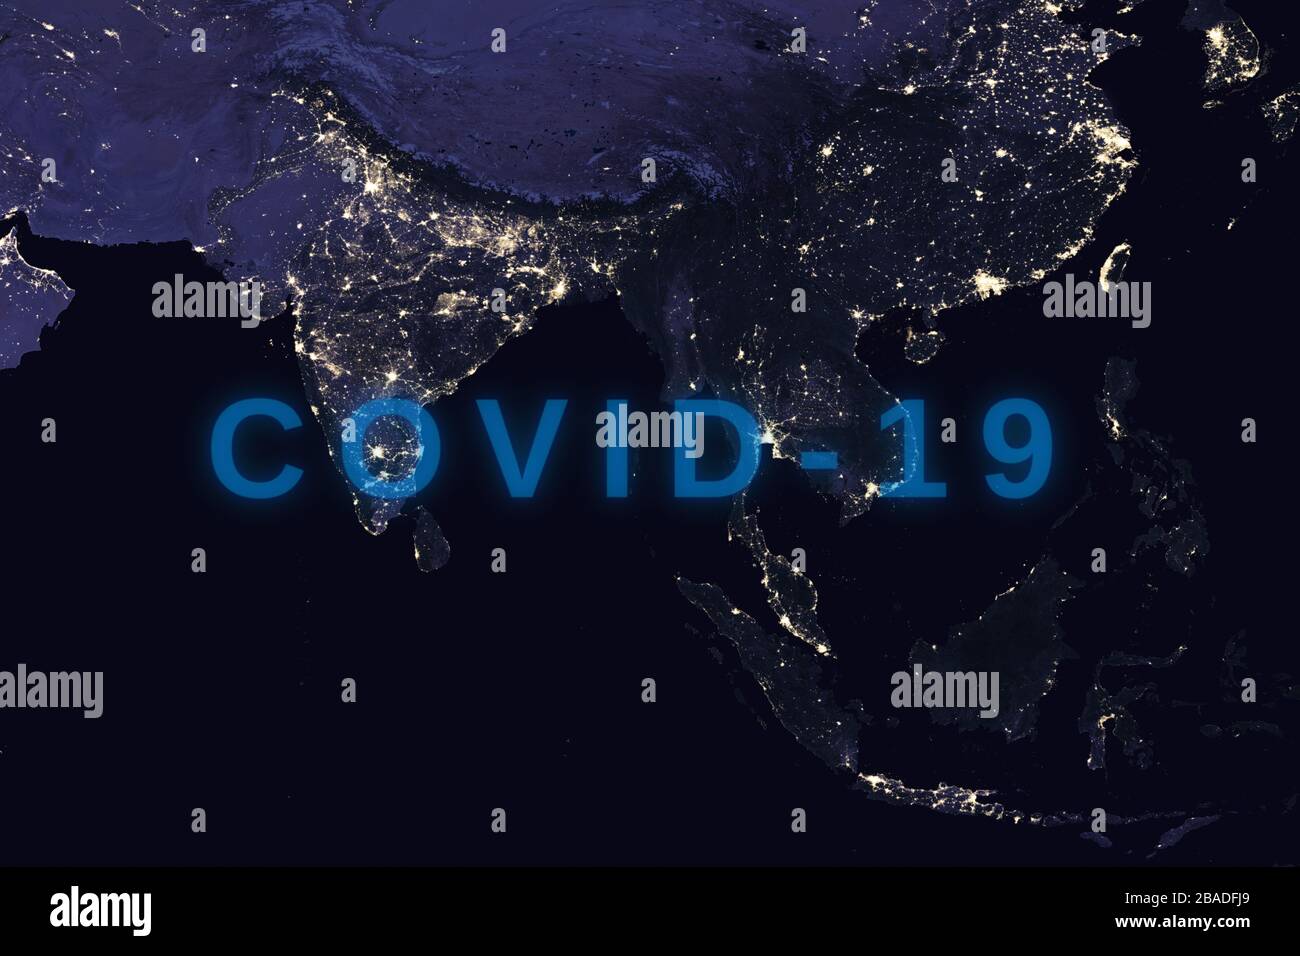 Coronavirus-Krankheit - glühendes COVID-19-Zeichen auf der Karte Südostasiens - Elemente dieses Bildes, das von der NASA eingerichtet wurde Stockfoto